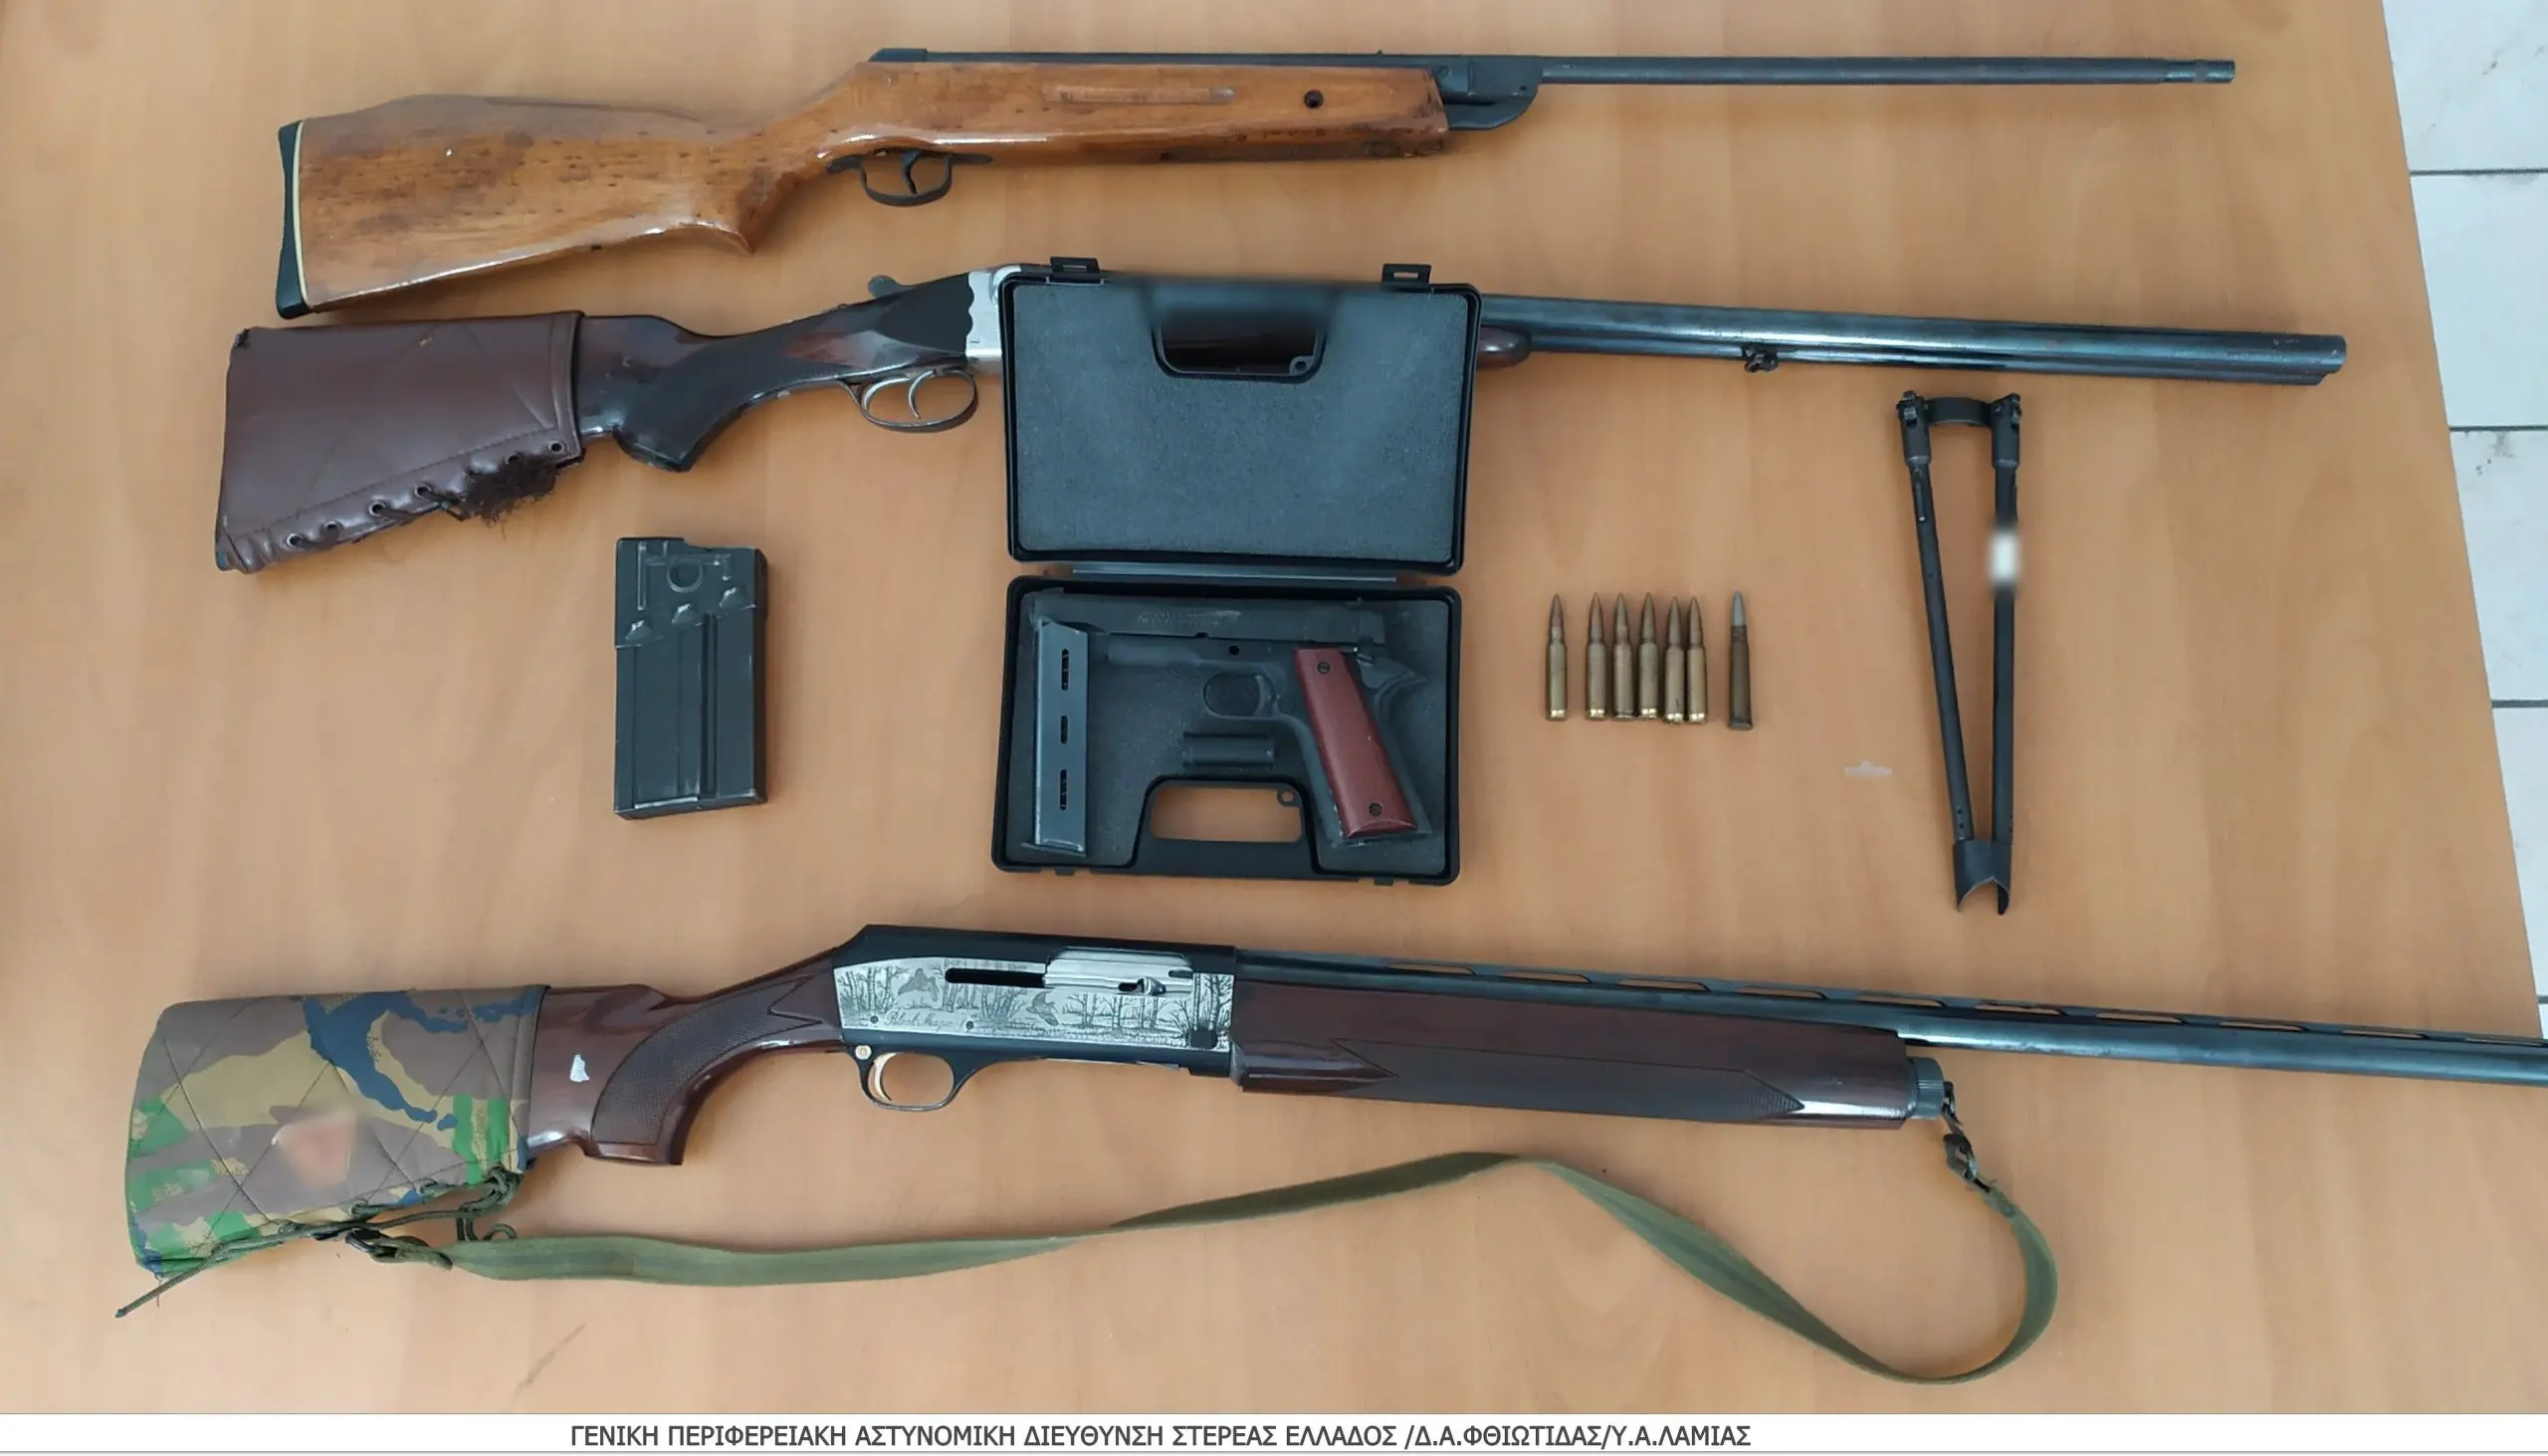 Σύλληψη άνδρα σε περιοχή της Φθιώτιδας, για παραβάσεις νομοθεσιών περί όπλων και ναρκωτικών